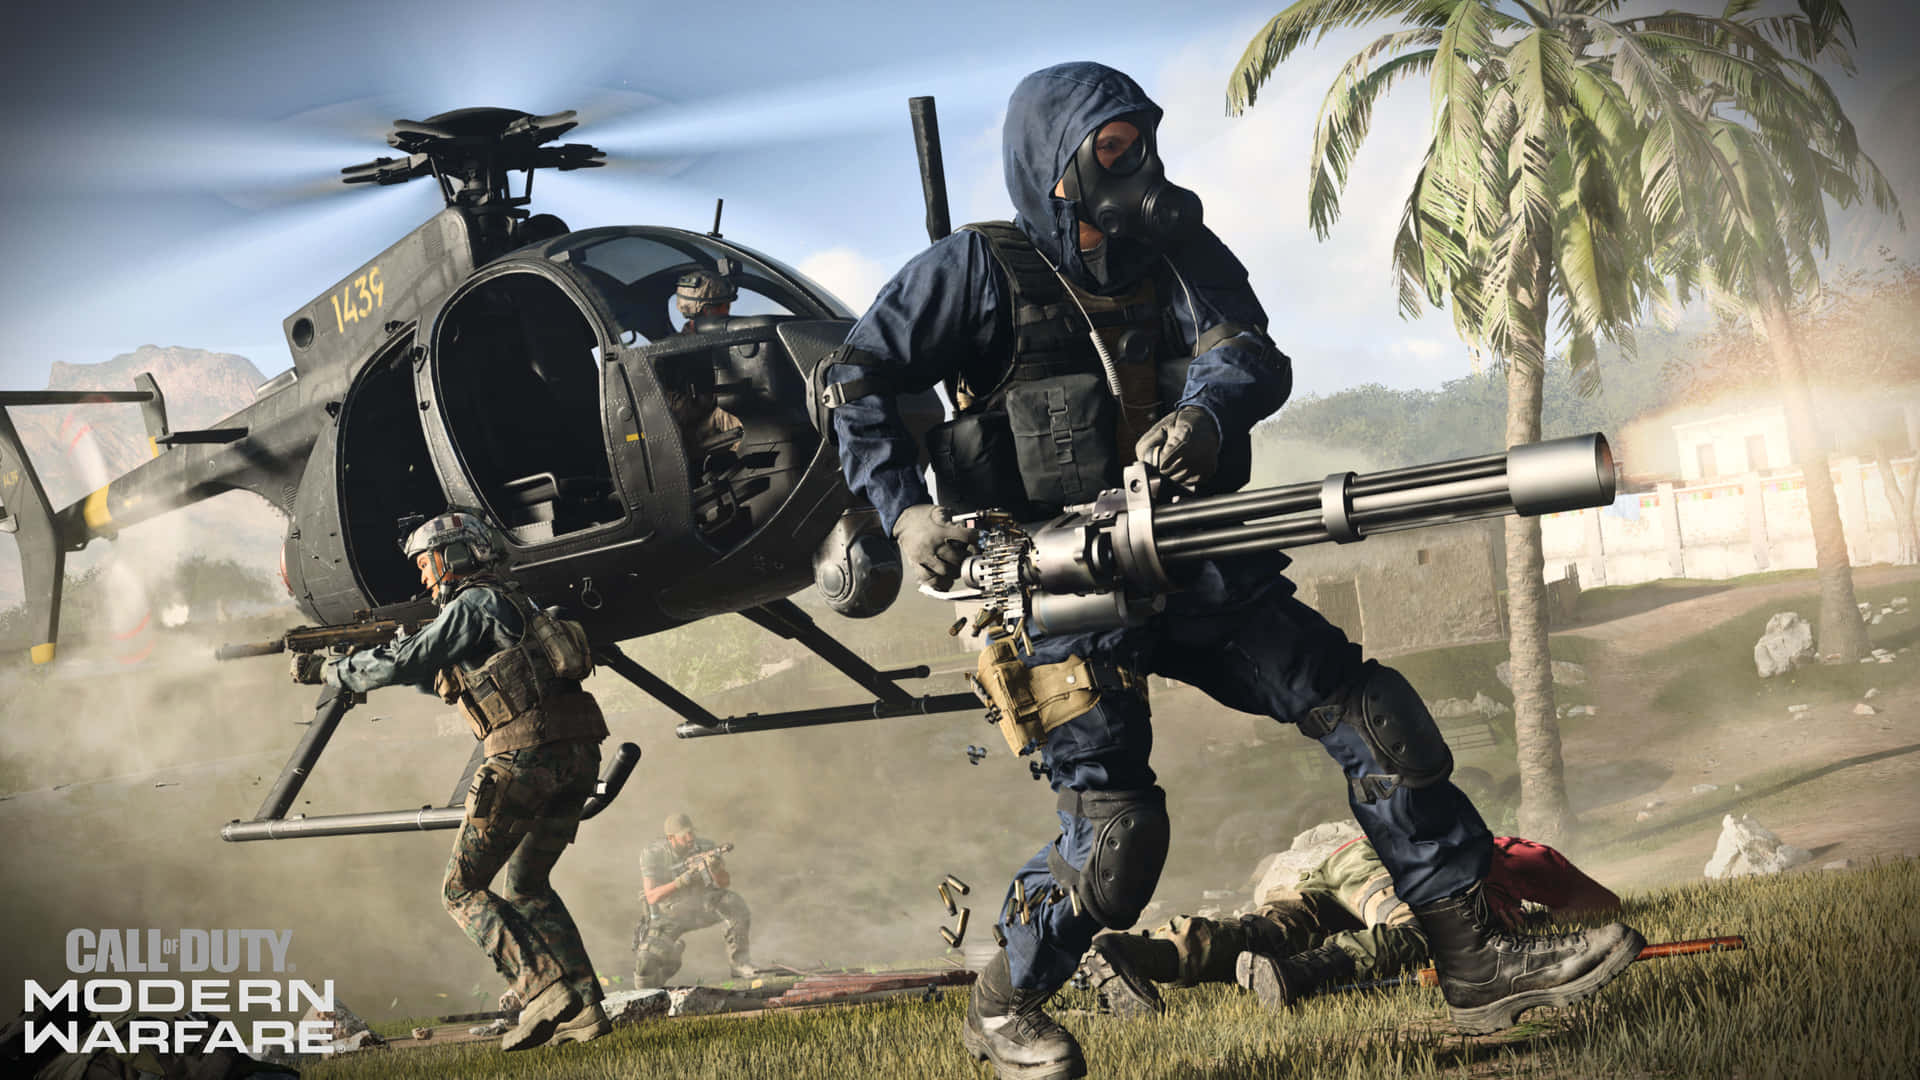 Master the art of modern warfare in Call of Duty: Modern Warfare